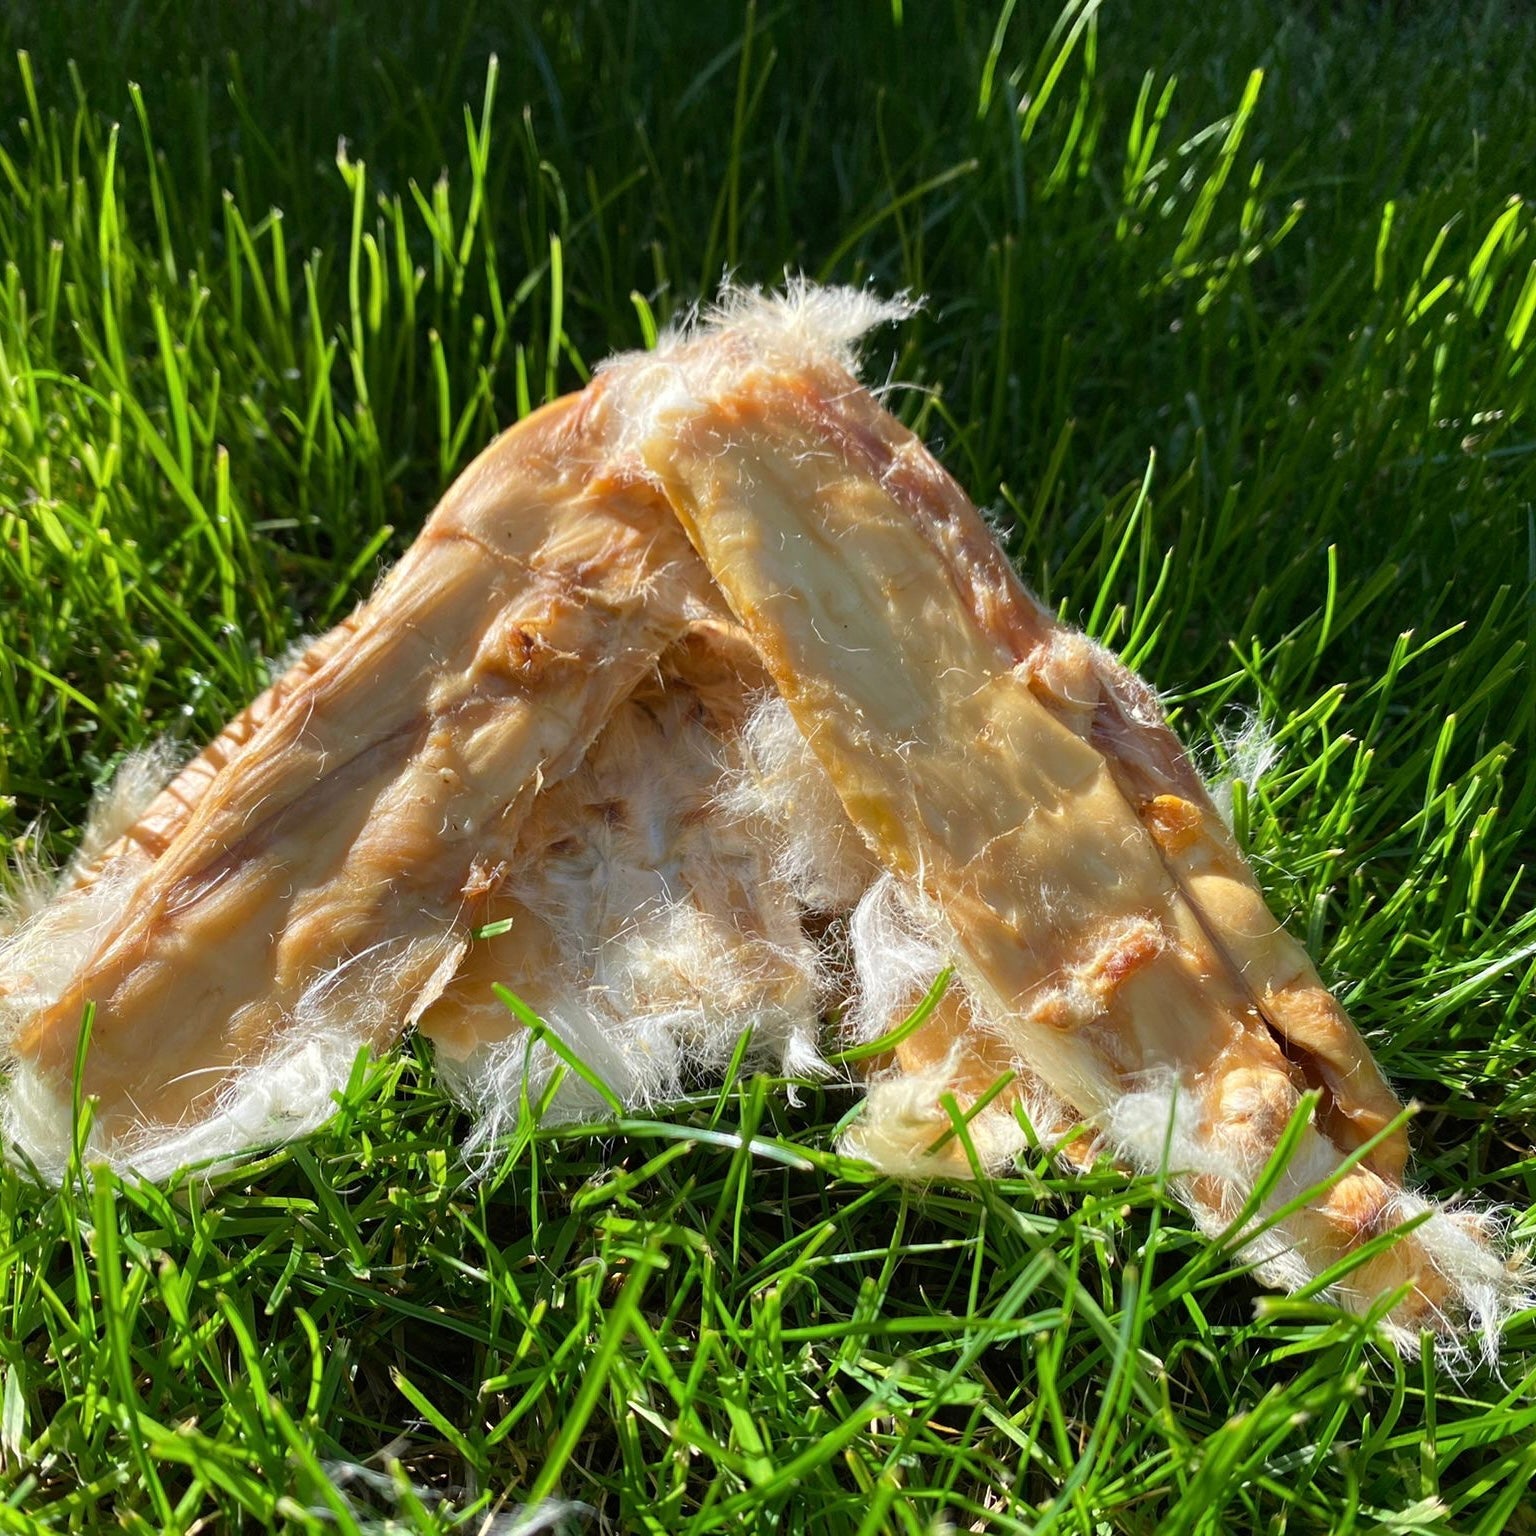 Rabbit Skin Slices with Fur - Chewbox Natural Dog Chew - Grain & Gluten Free